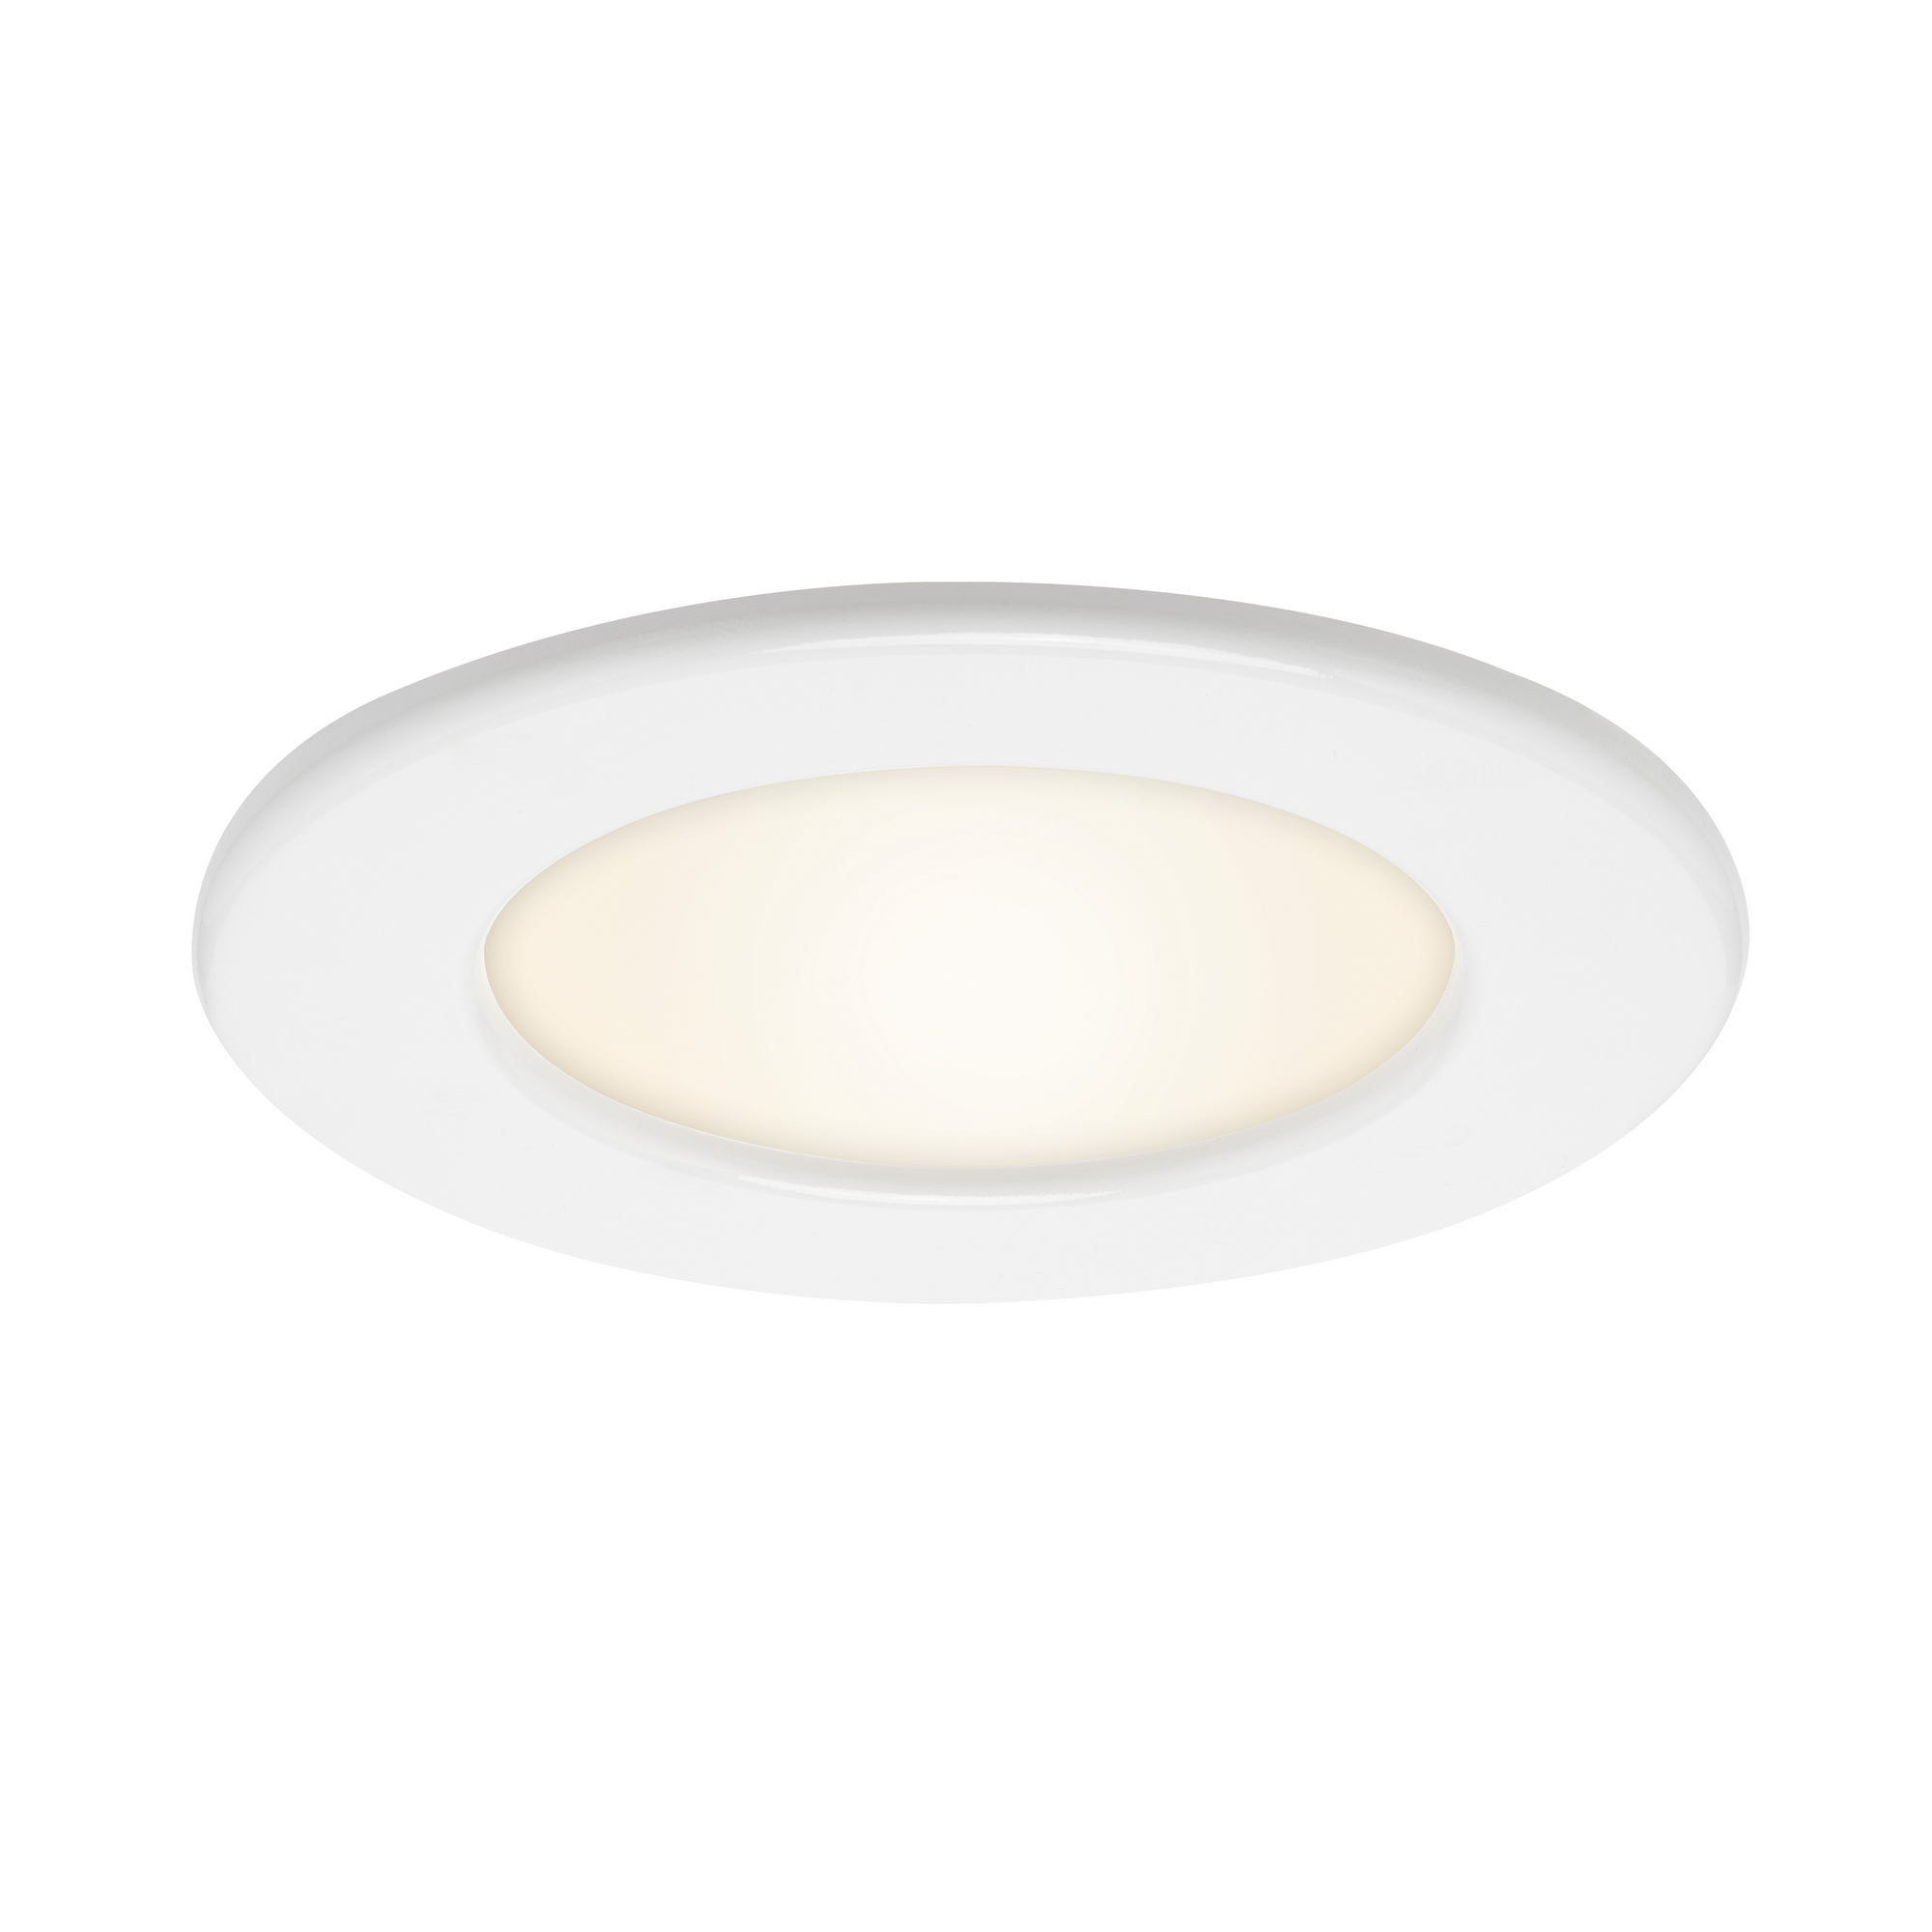 LED-Einbauleuchte 'Thin' weiß 450 lm, 3er-Set, IP 44 + product picture